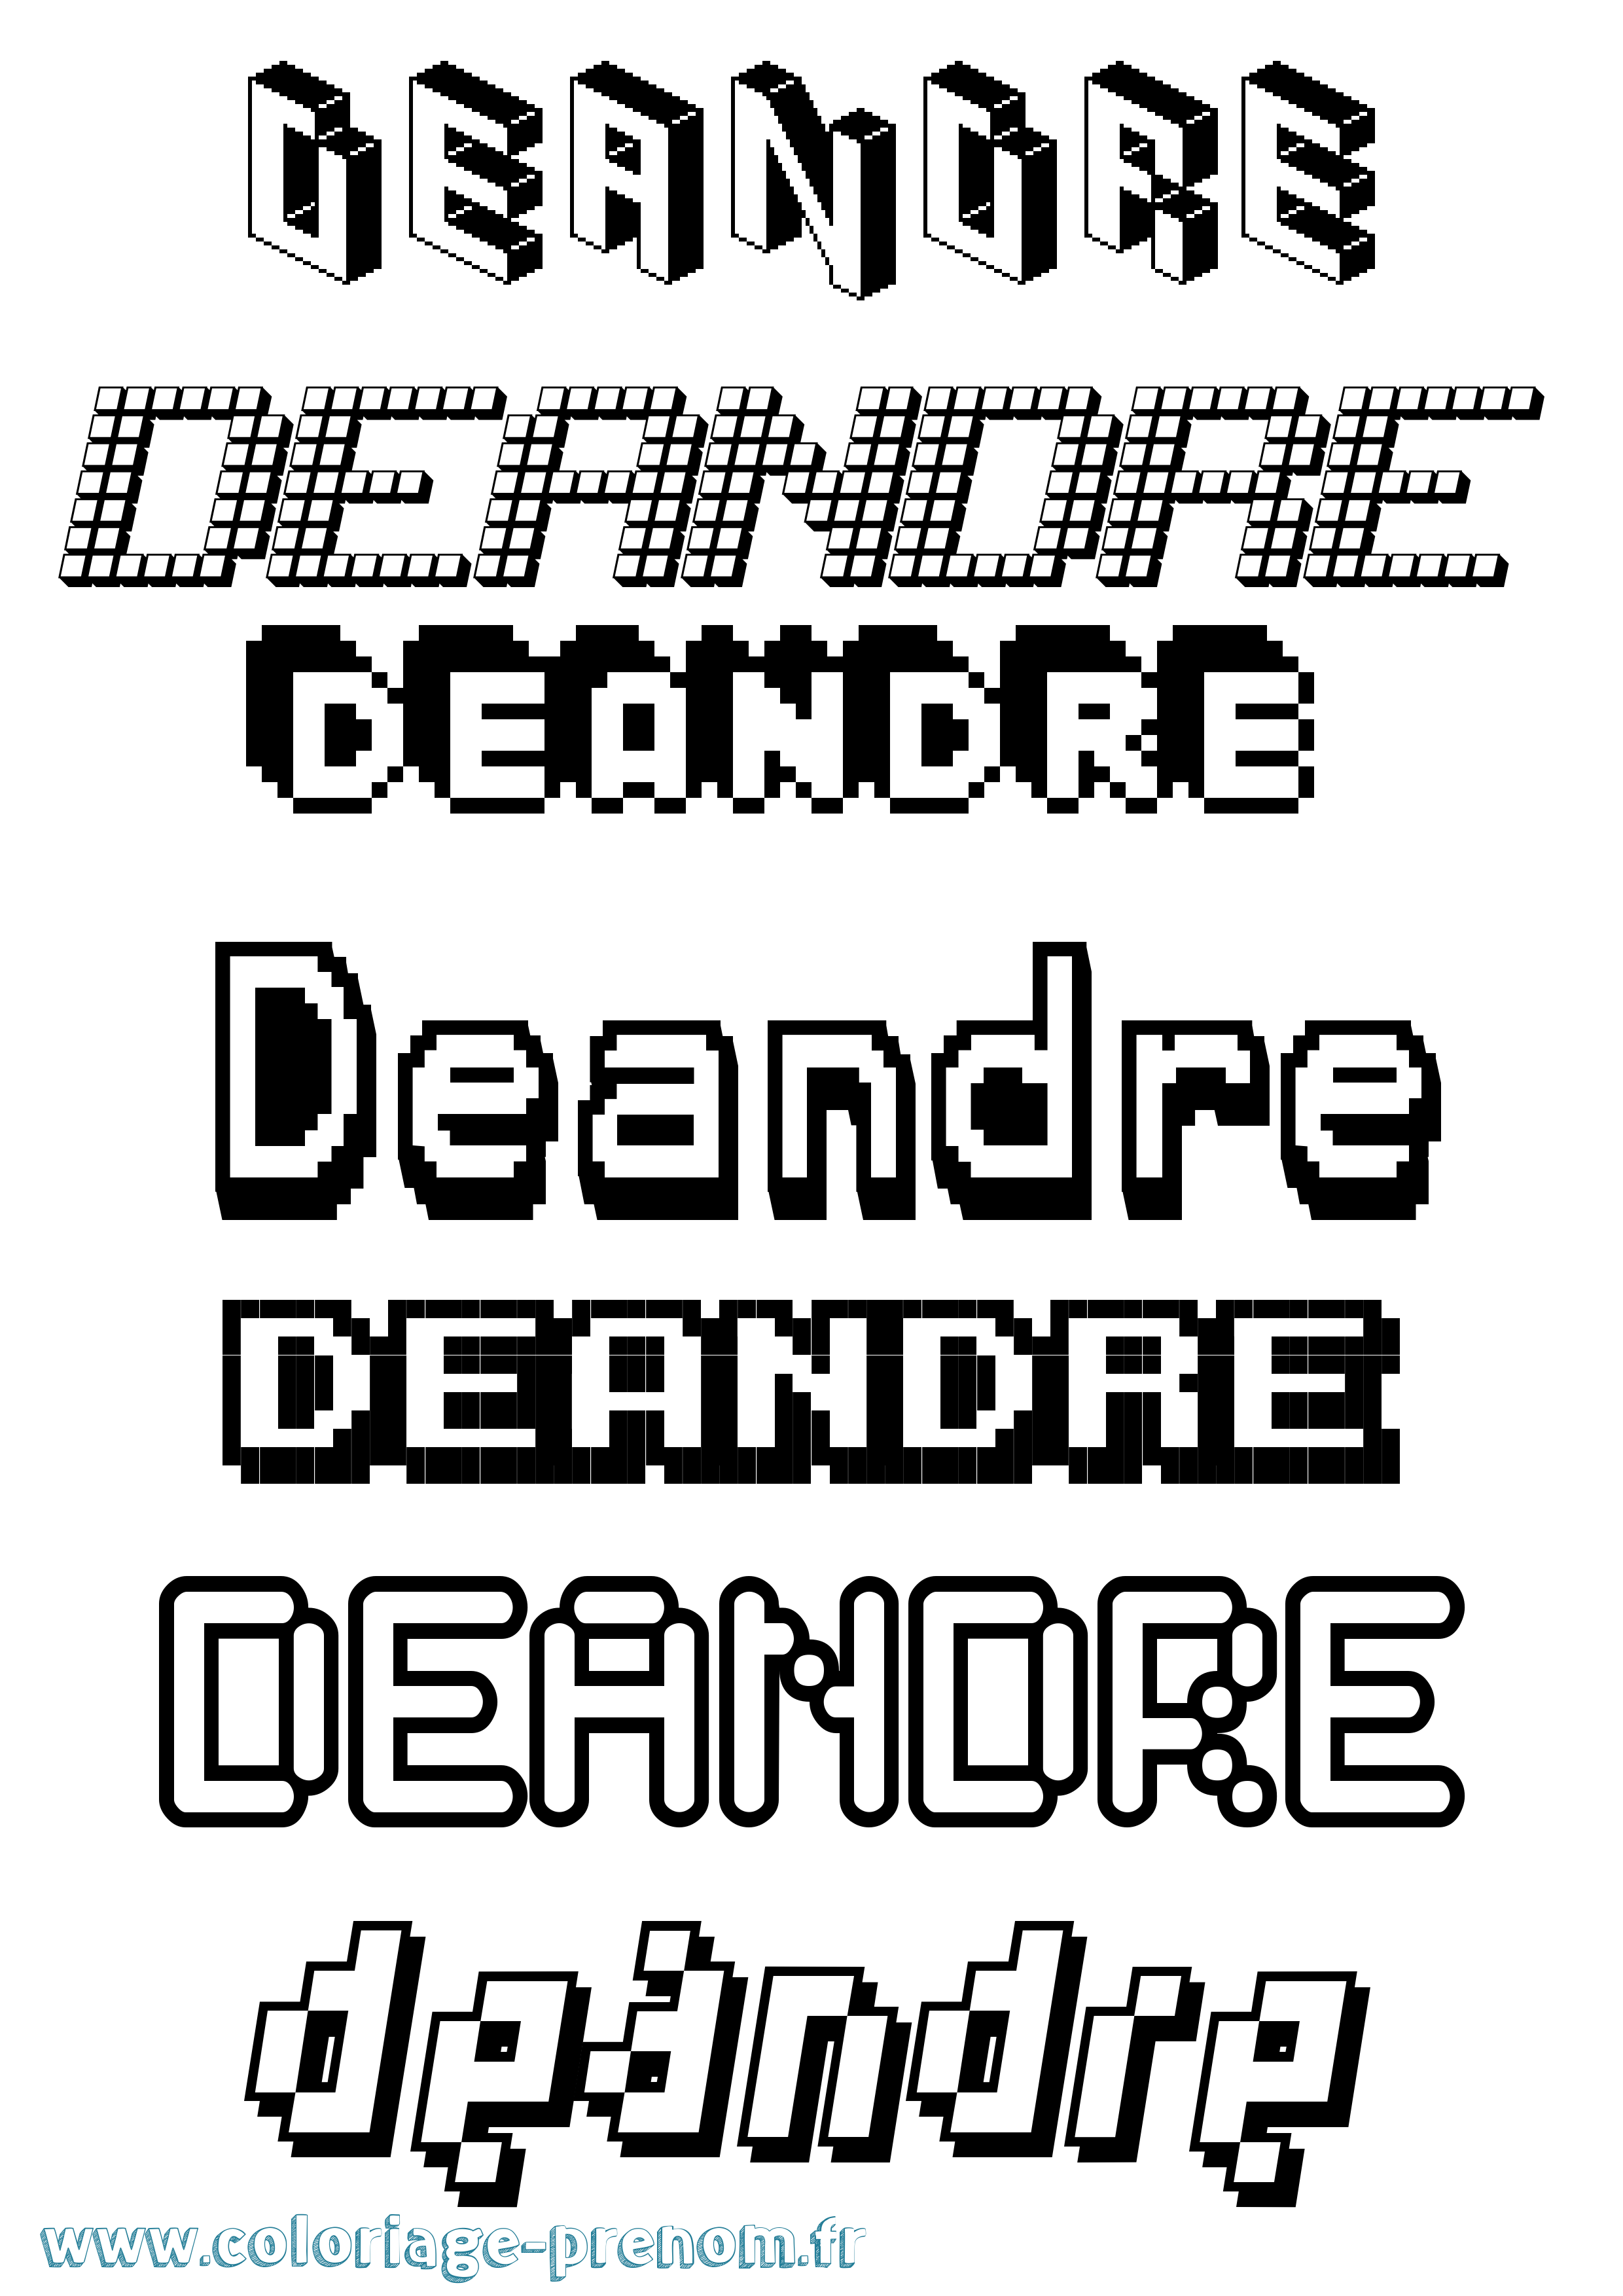 Coloriage prénom Deandre Pixel